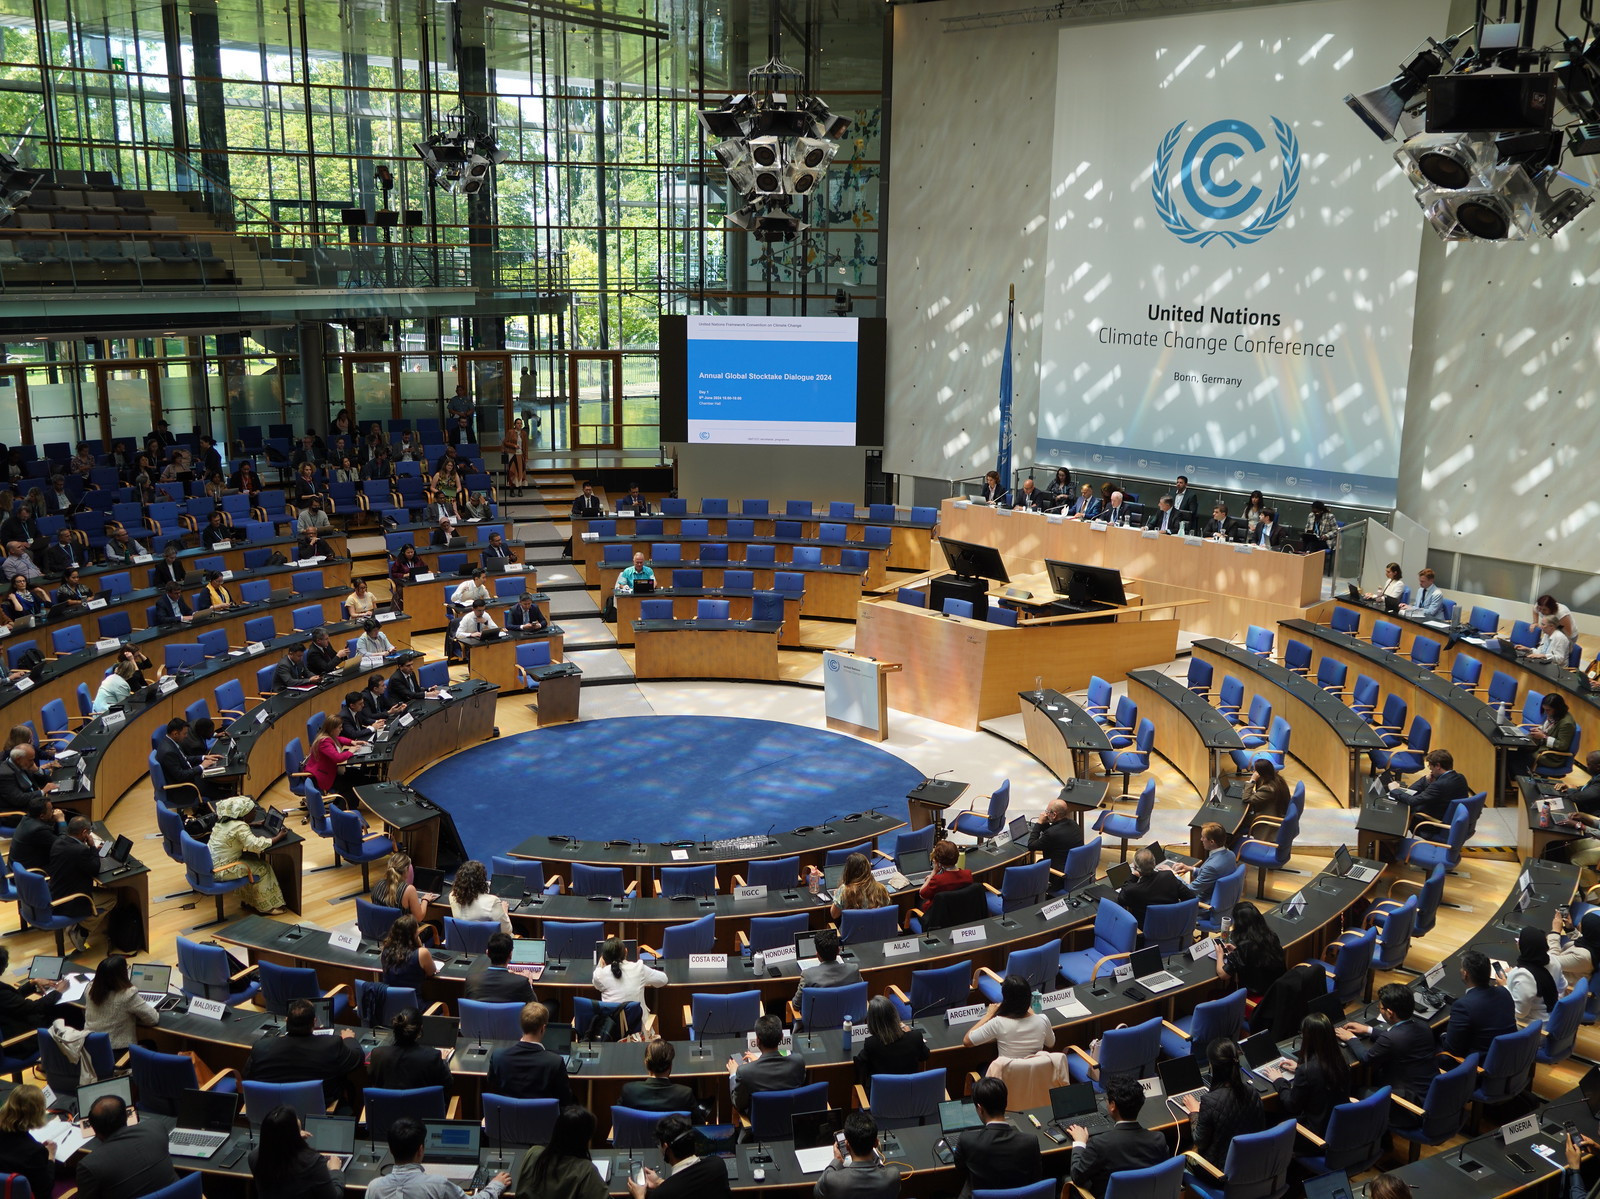 Conférence sur le climat des Nations unies à Bonn en Allemagne - juin 2024   © :  UNFCCC - Amira Grotendiek Action climatique : quel financement pour soutenir le Sud global ?